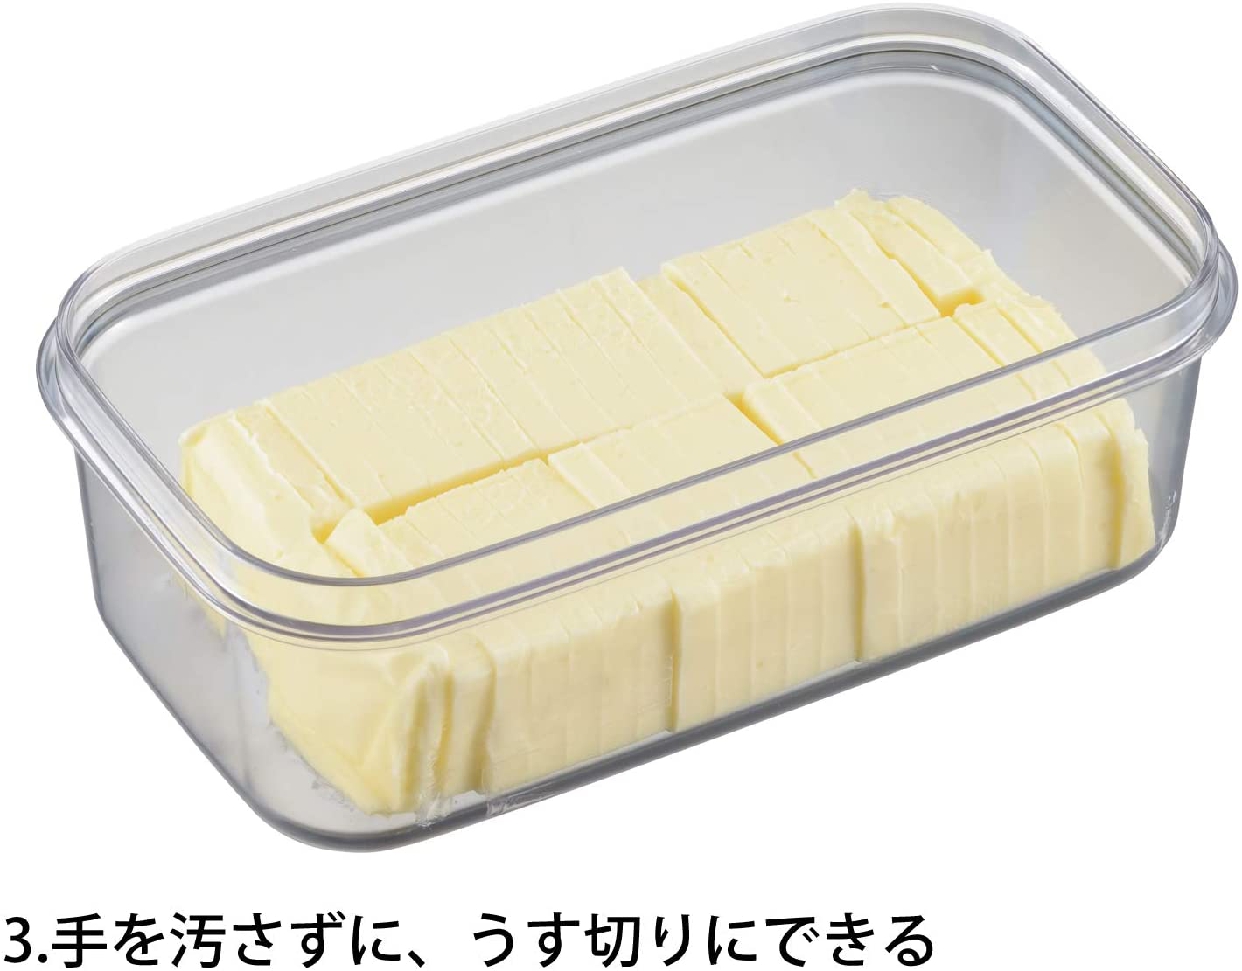 曙産業(AKEBONO) カットできちゃうバターケース ST-3005の商品画像サムネ4 